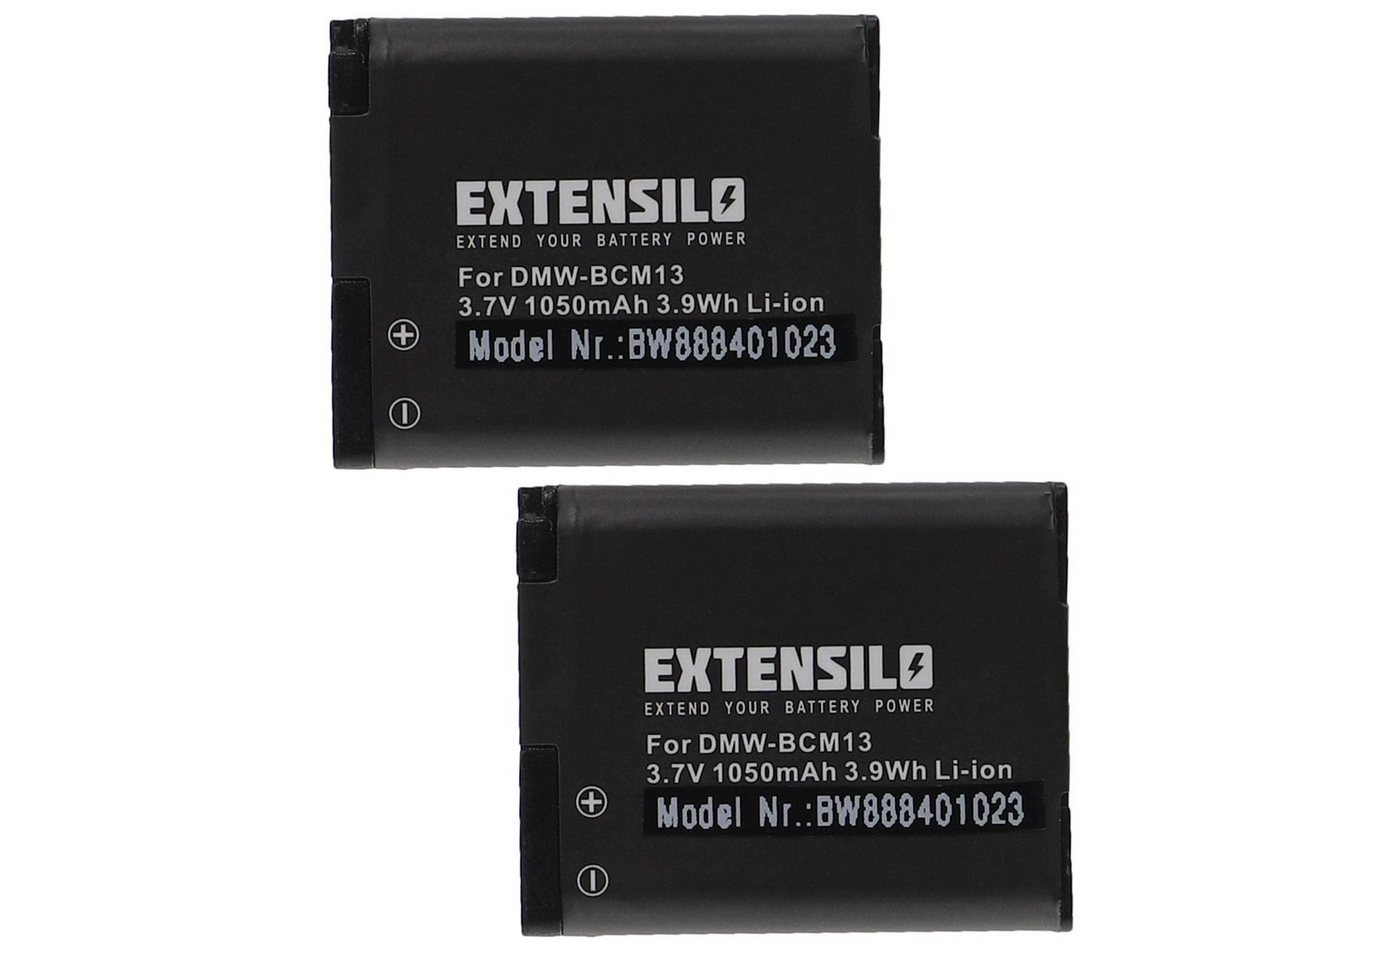 Extensilo passend für Panasonic Lumix DMC-FT5, DMC-FT5A, DMC-FT5D, DMC-FT5K, DMC-FT5S, DMC-LZ40, DMC-LZ40K Kamera / Foto Digitalkamera (1050mAh, 3,7V, Li-Ion) Kamera-Akku 1050 mAh von Extensilo